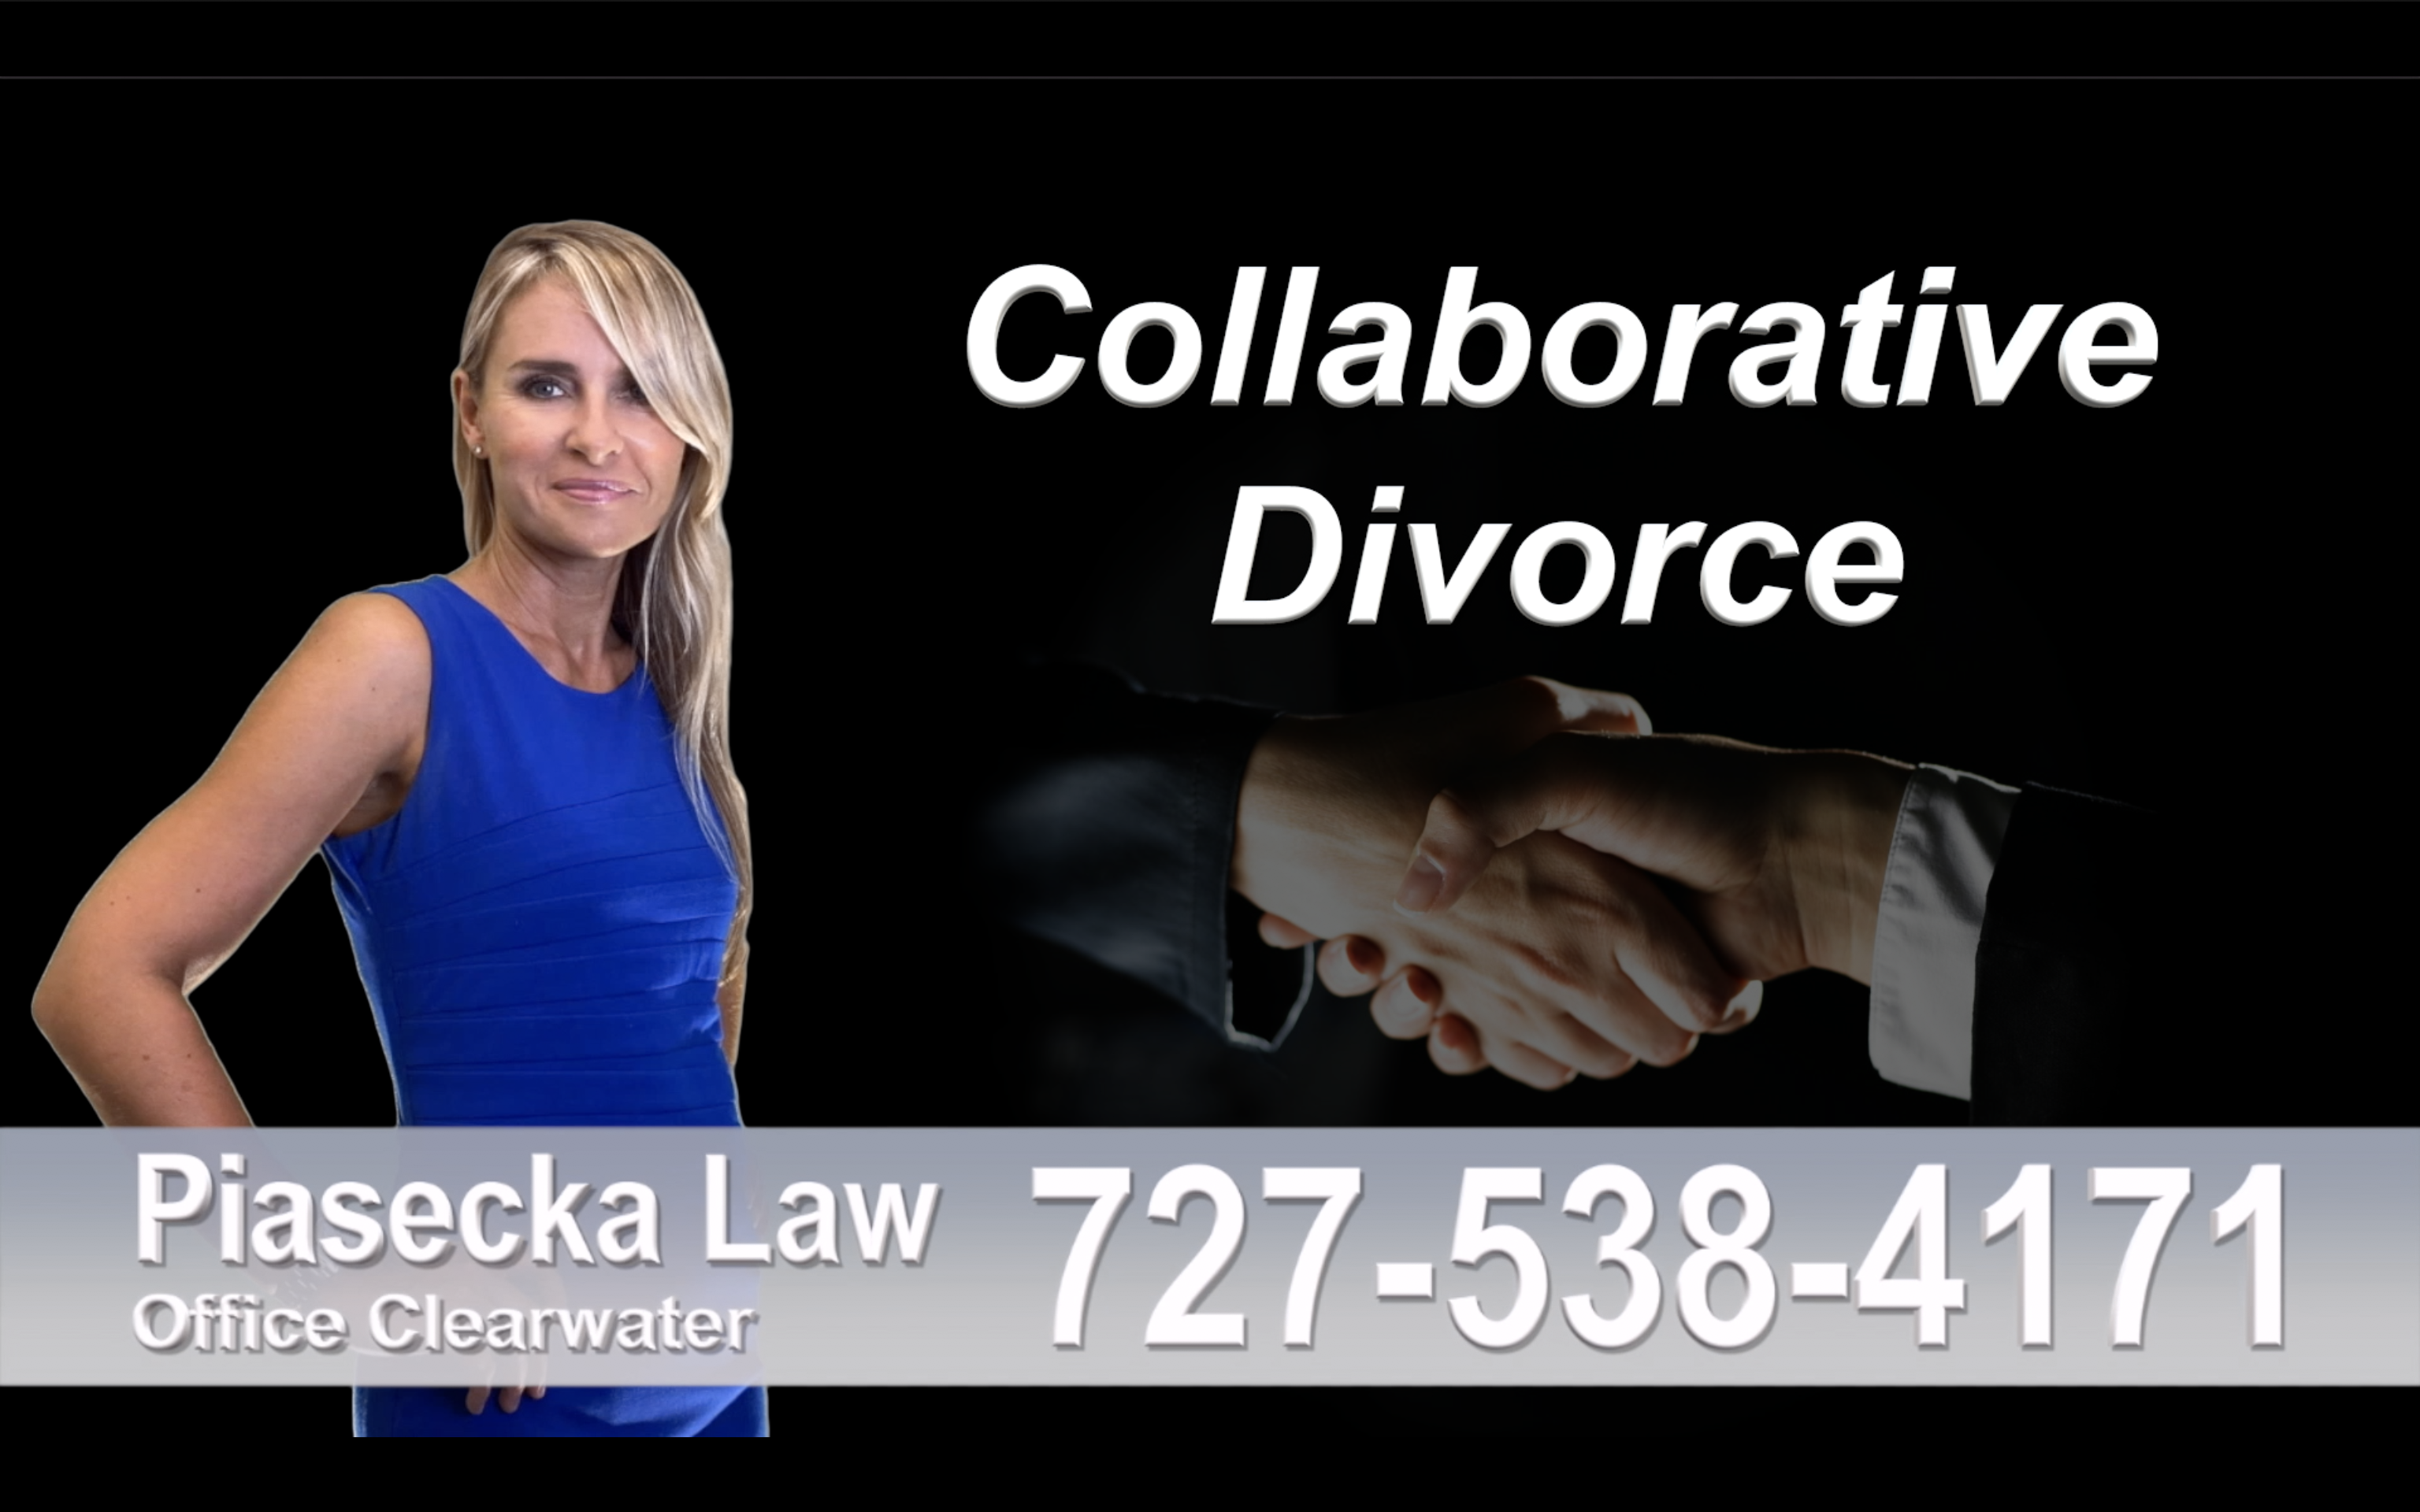 Miami Beach Collaborative, Divorce, Attorney, Agnieszka, Piasecka, Prawnik, Rozwodowy, Rozwód, Adwokat, rozwodowy, Najlepszy, Best, Collaborative, Divorce, Attorney